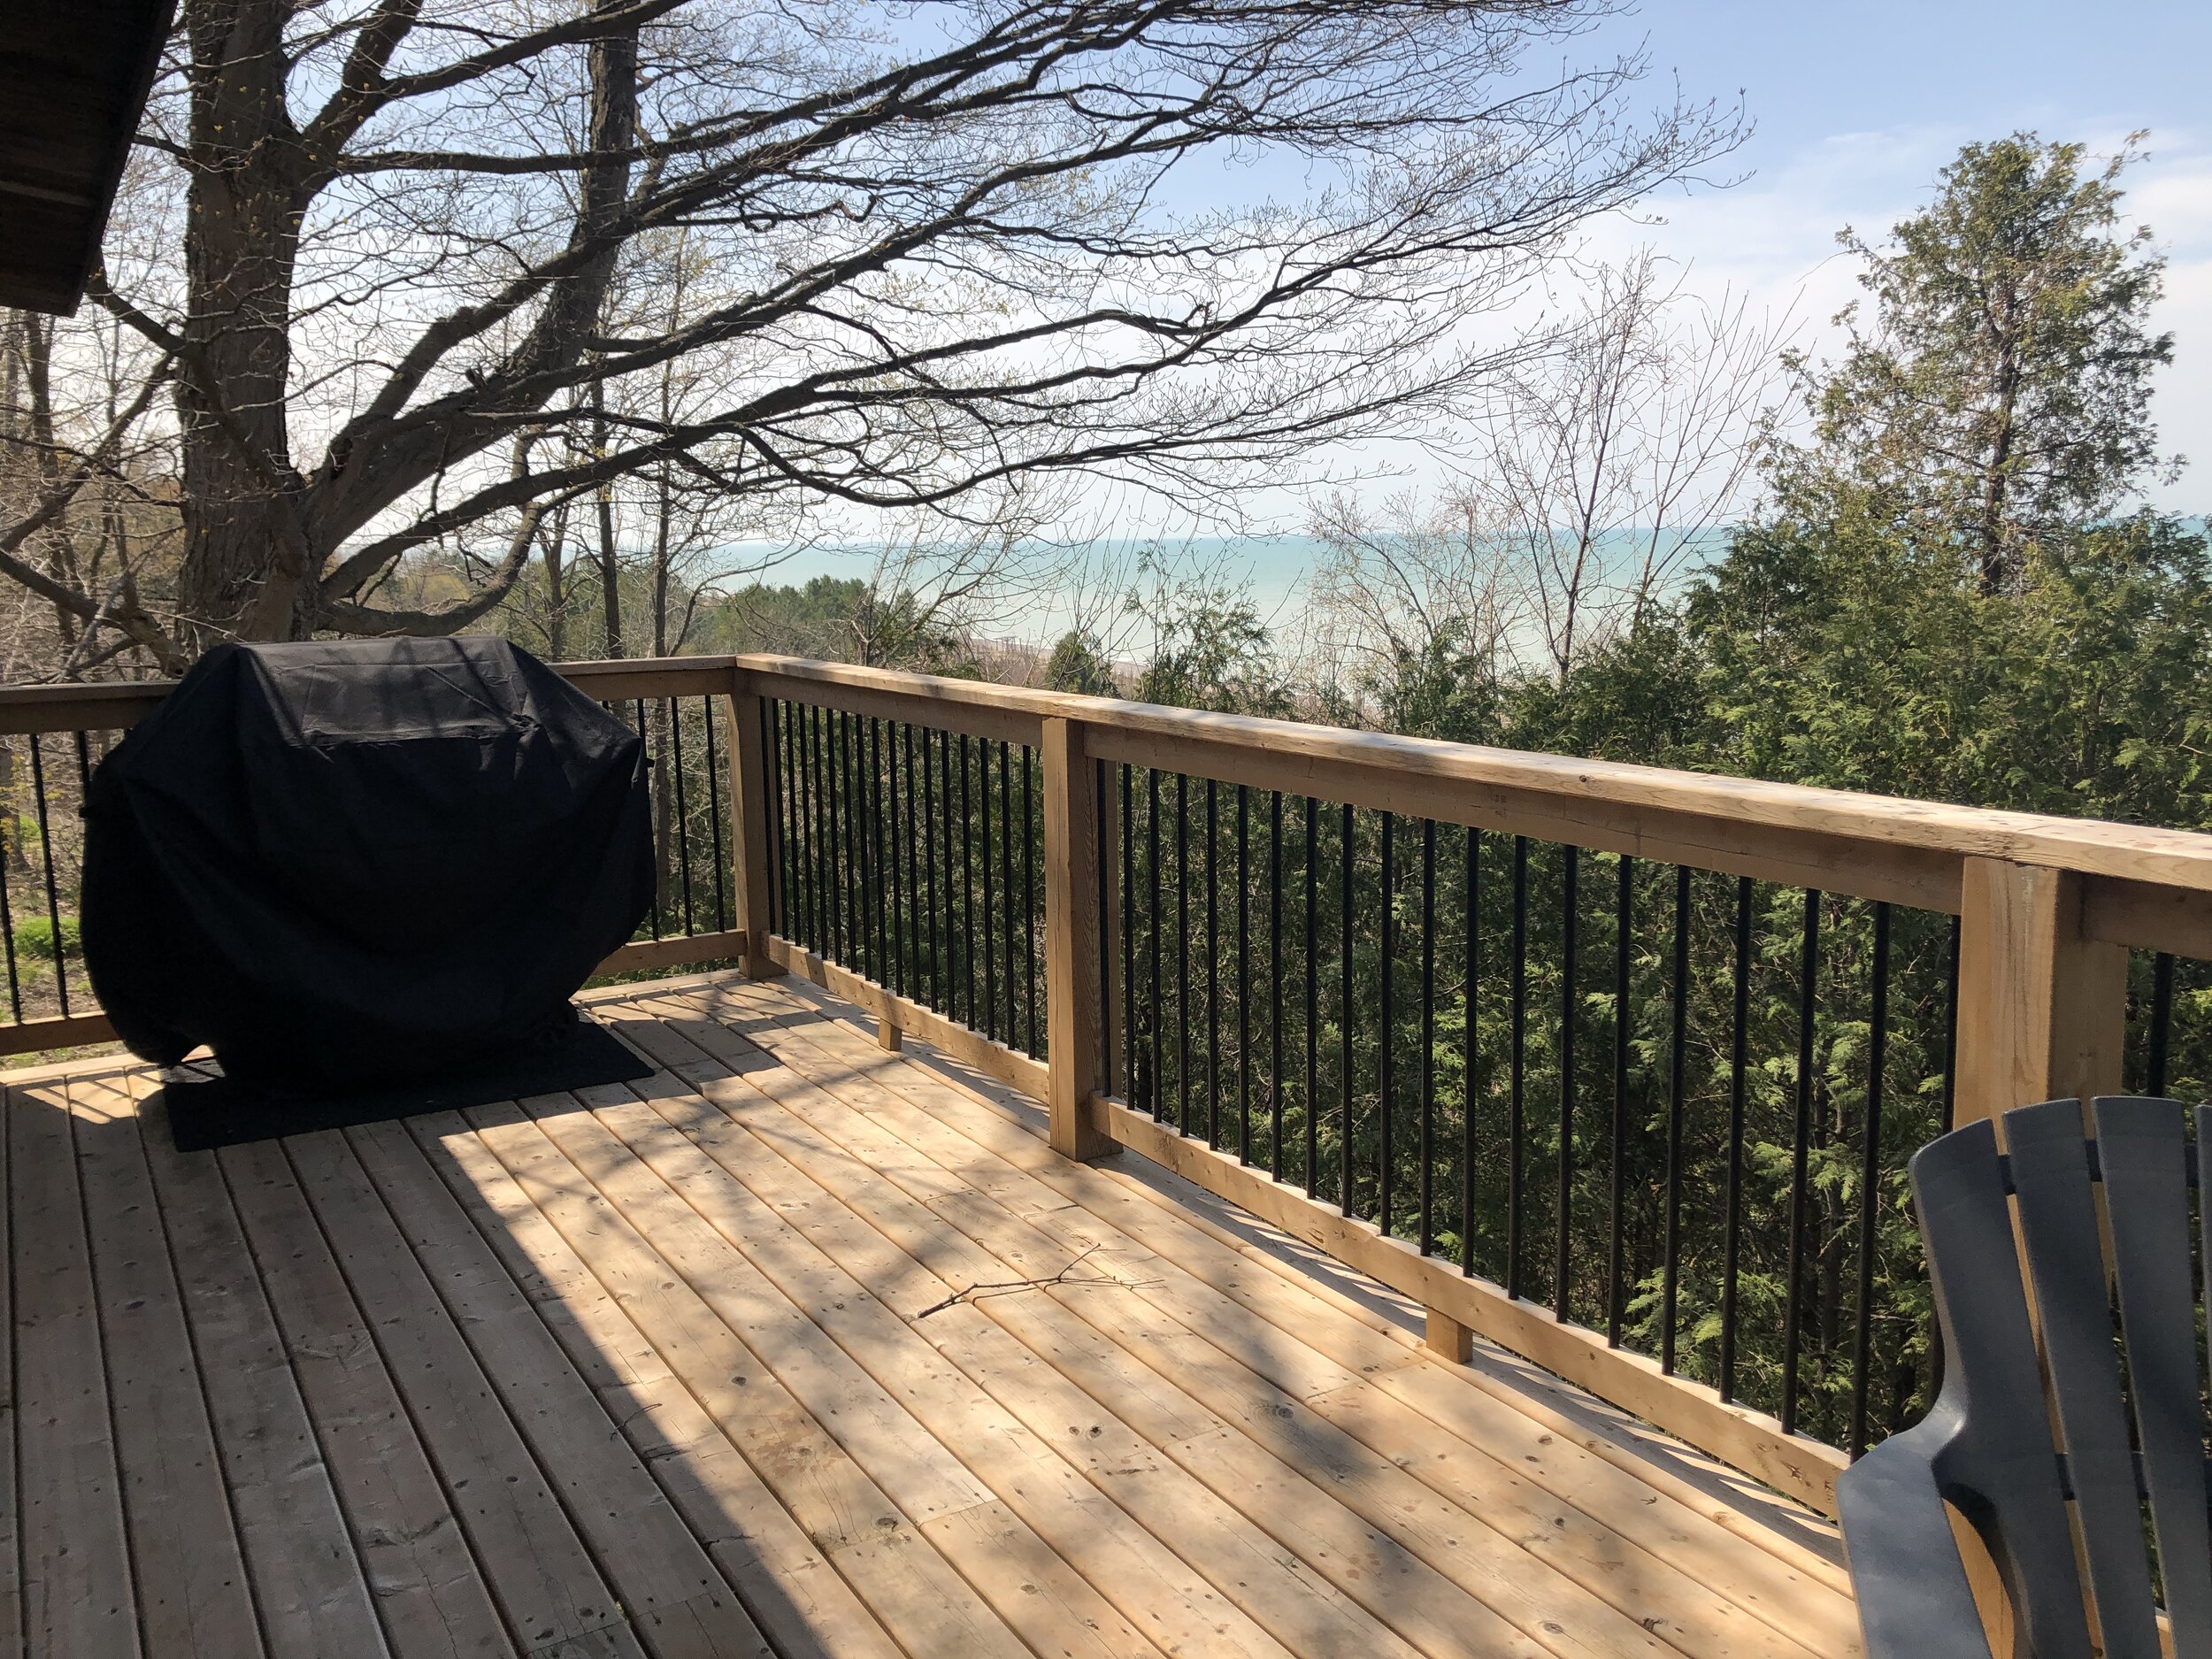 Lake-facing deck